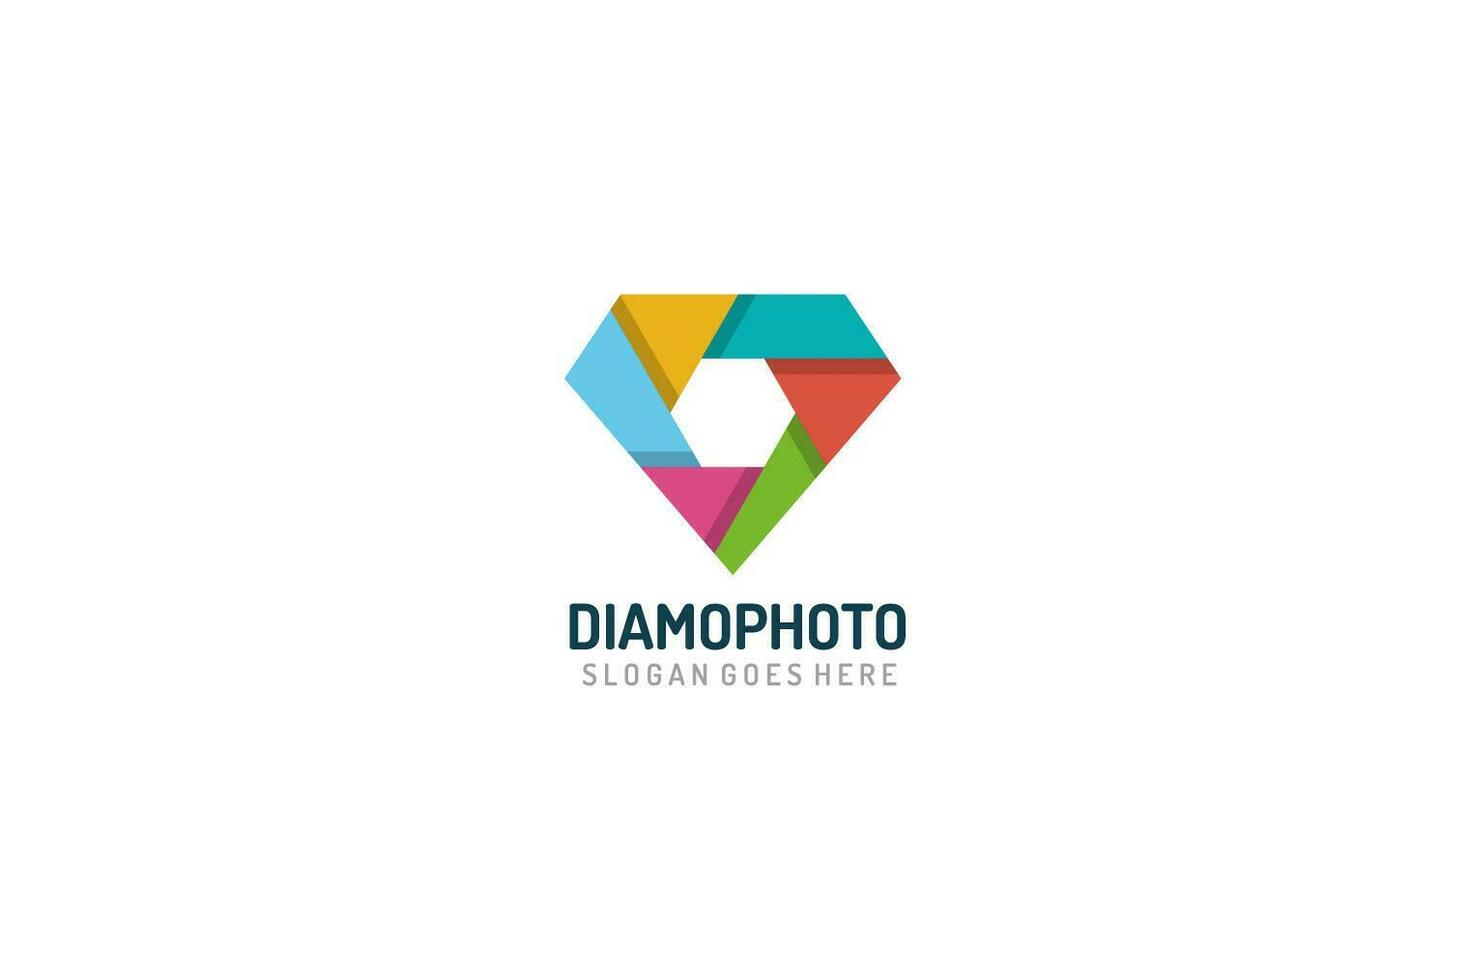 Logotipo de fotografia de diamante vetor